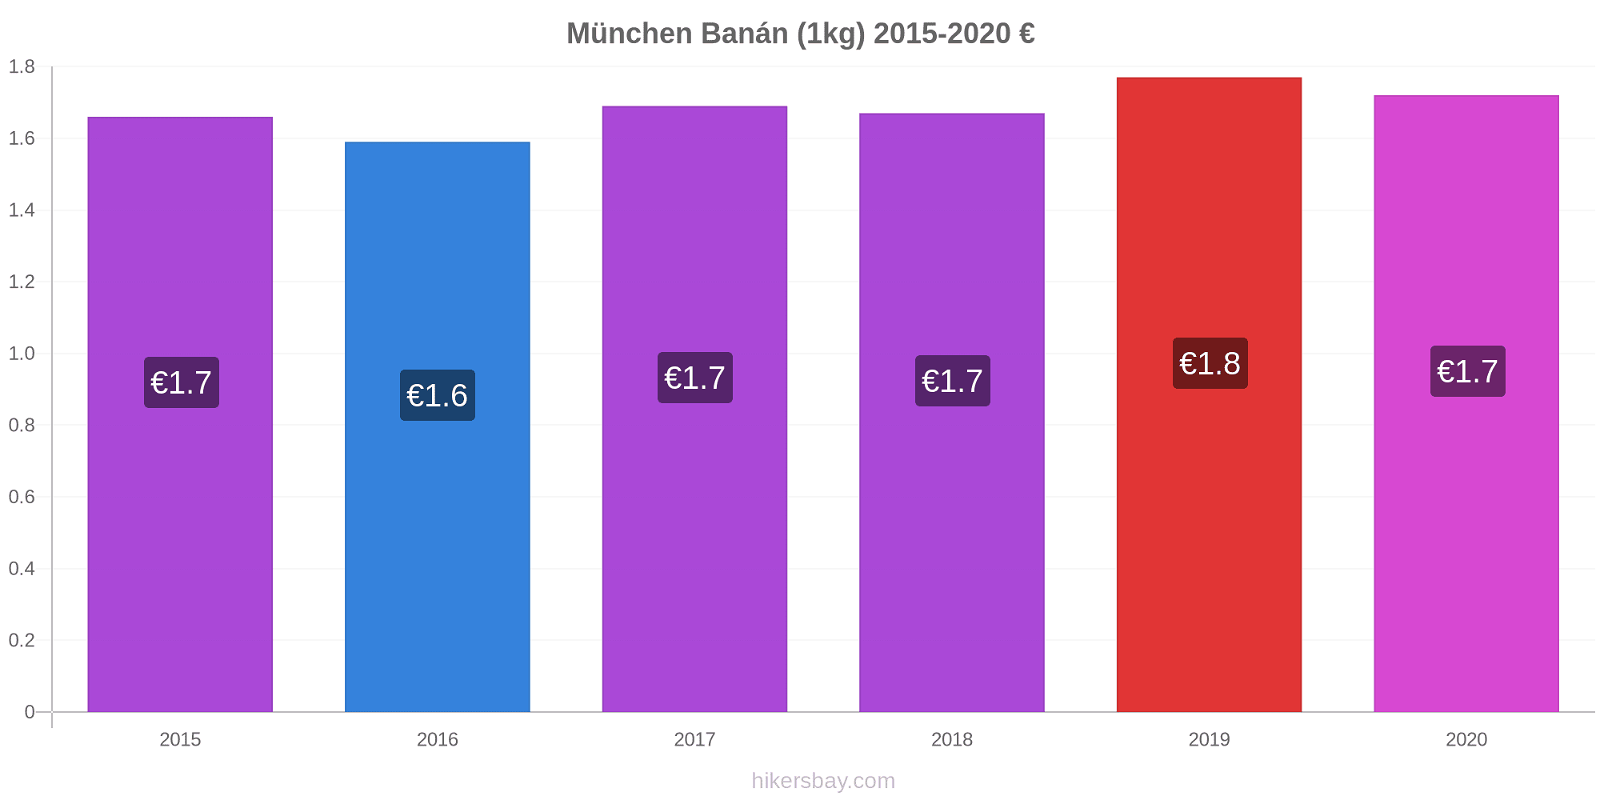 München árváltozások Banán (1kg) hikersbay.com